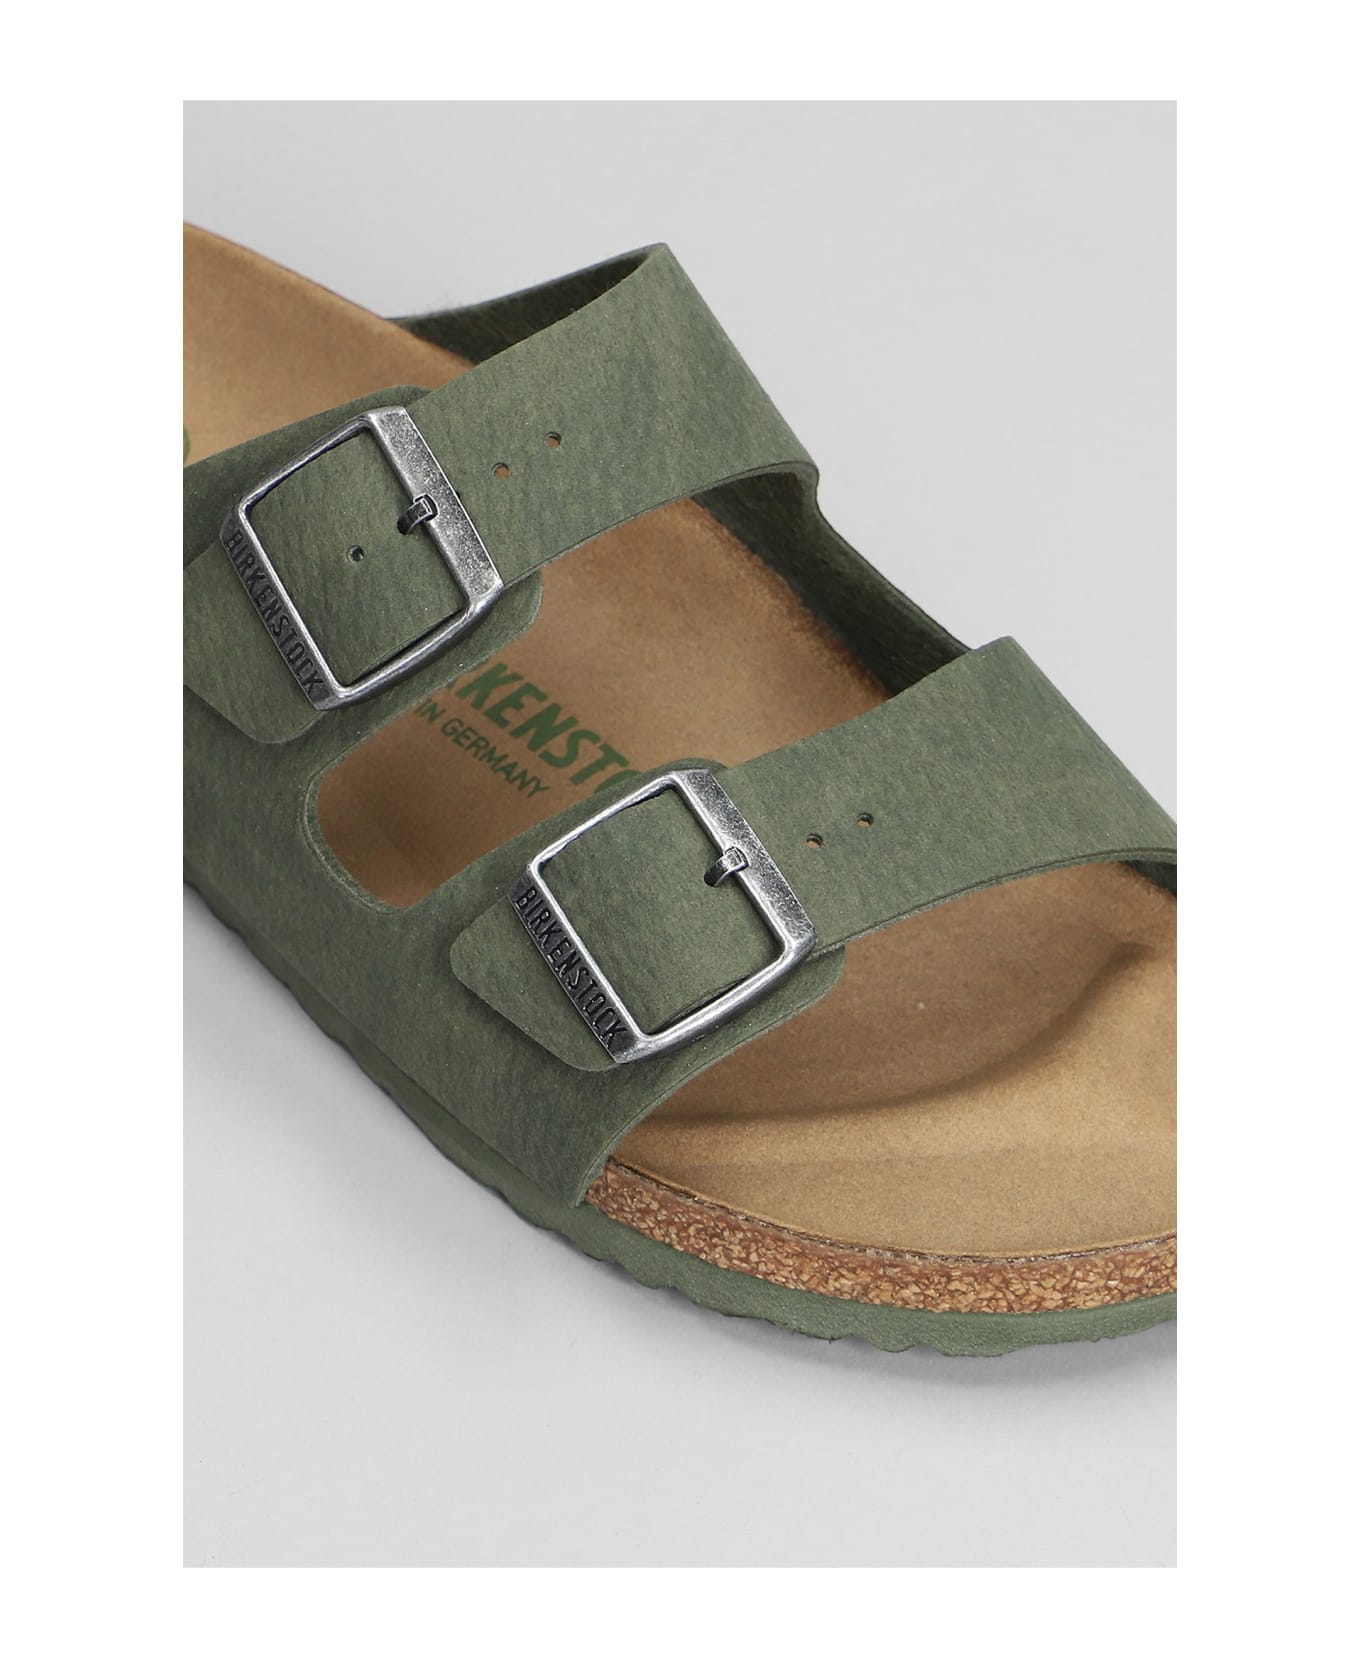 Birkenstock 'arizona' Sandals - Green